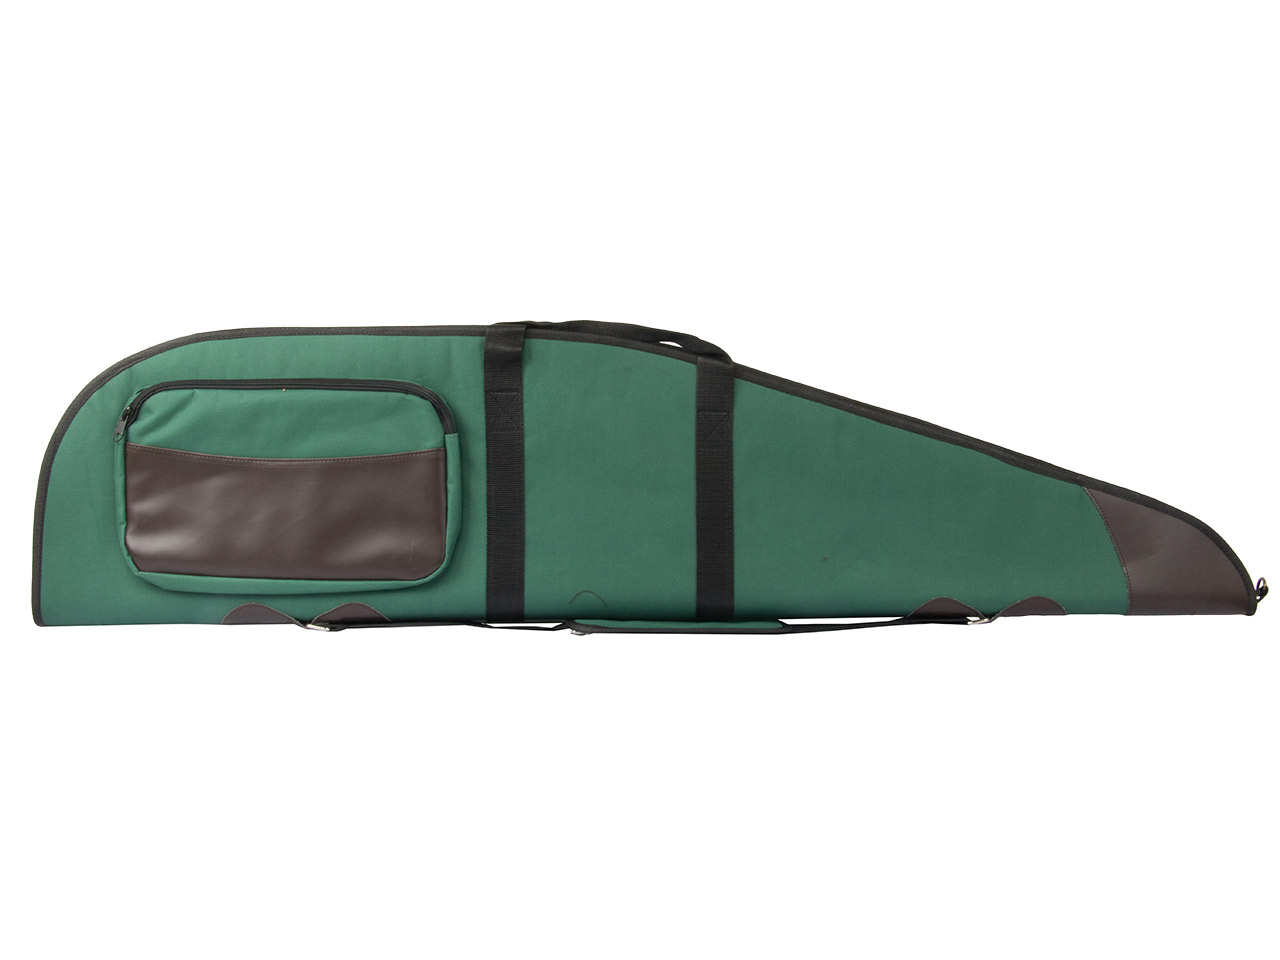 Gewehrfutteral Gewehrtasche Polyester 117 x 25 cm abschließbar Polyester grün braun schwarz für Waffen mit Zielfernrohr